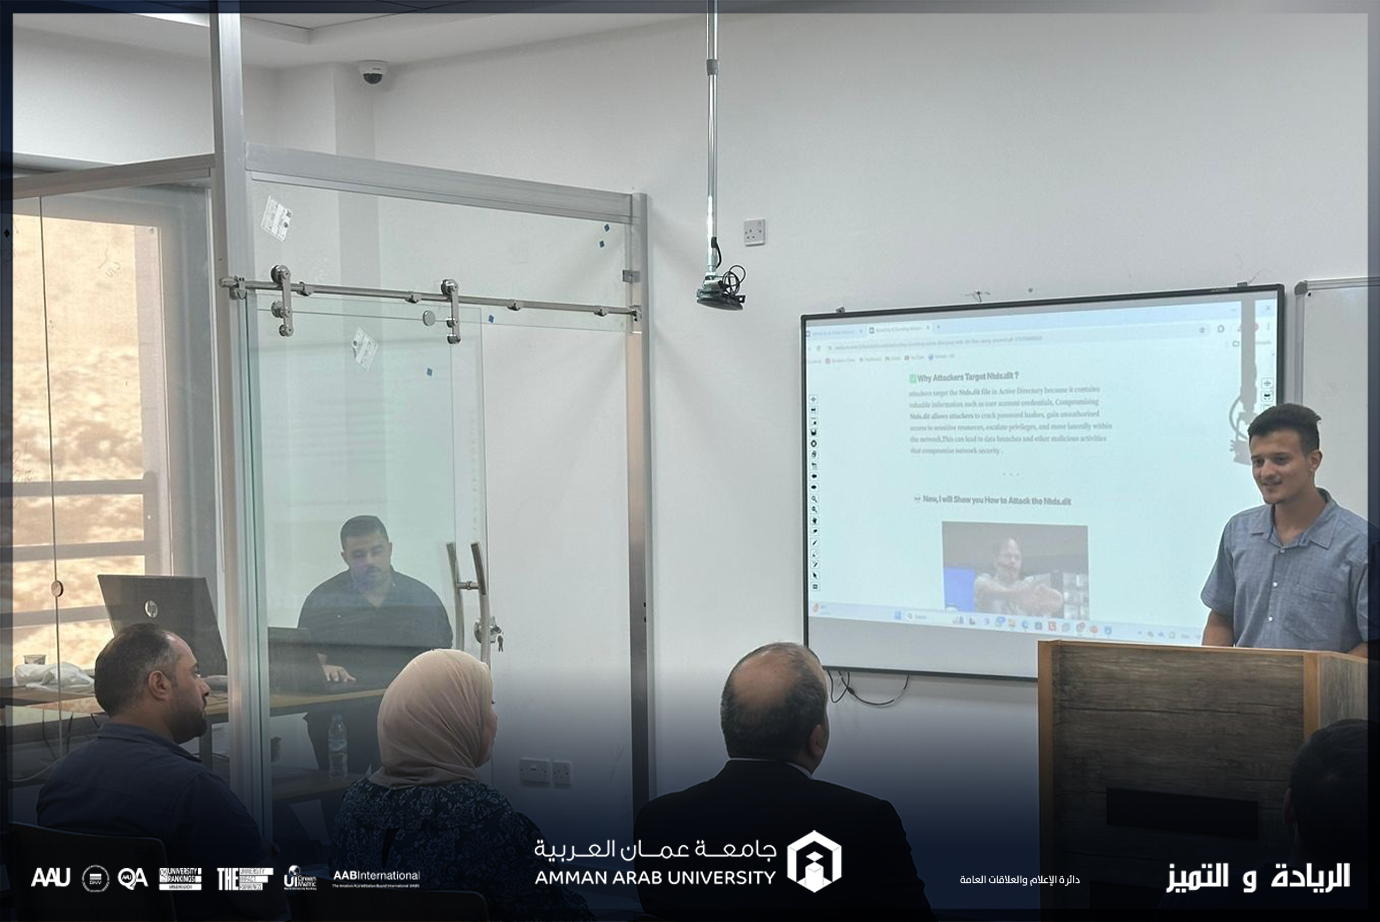 قسم تكنولوجيا المعلومات في عمان العربية ينظم لقاءً تحفيزيًا لطلبة الأمن السيبراني